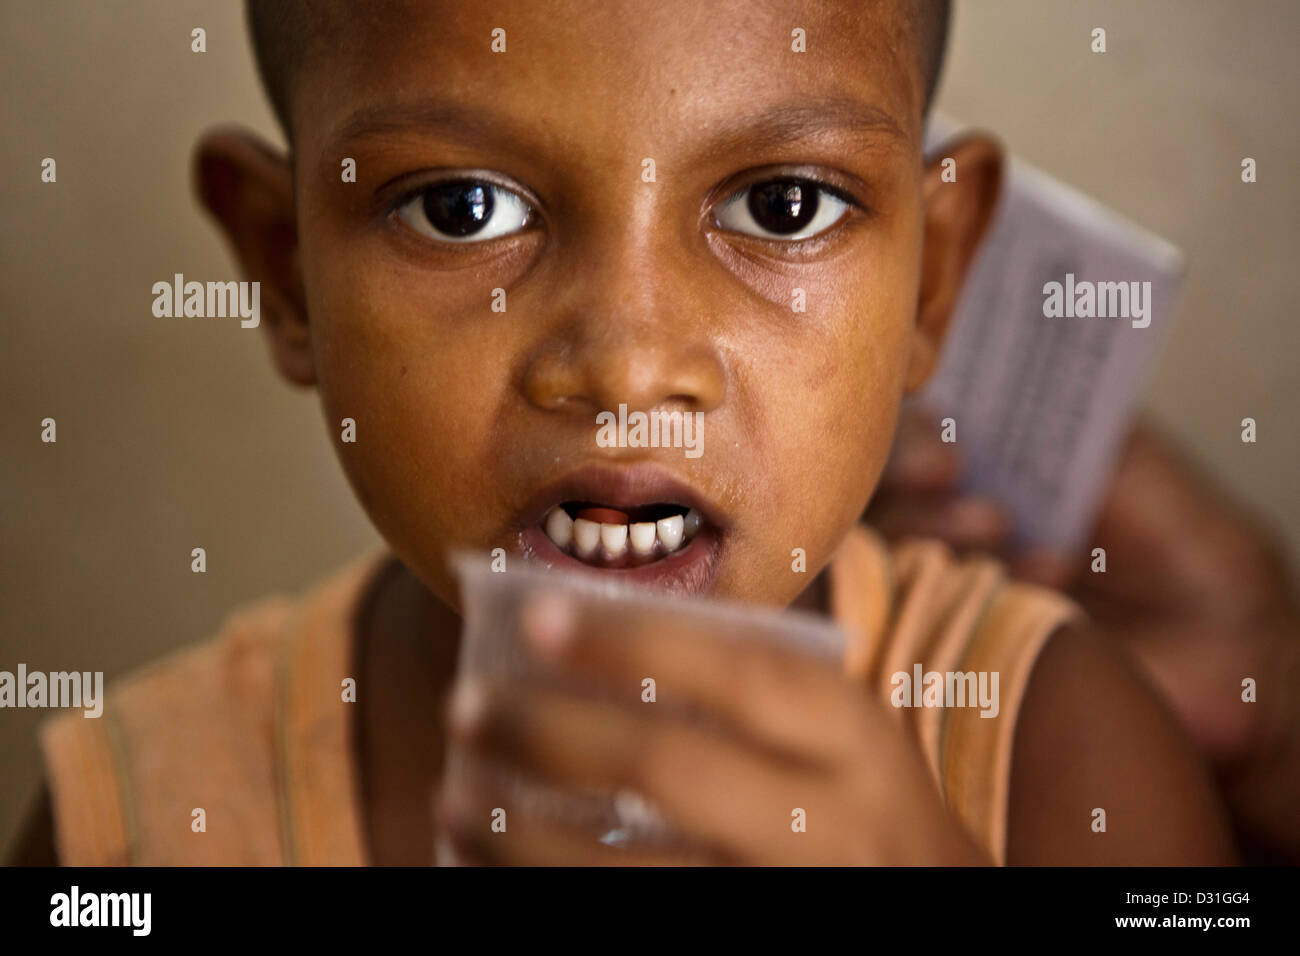 Indisches Kind erhält ihre täglichen Medikamente Tabletten für Tuberkulose (TB), die sind verzichtet wird. Delhi, Indien. Stockfoto